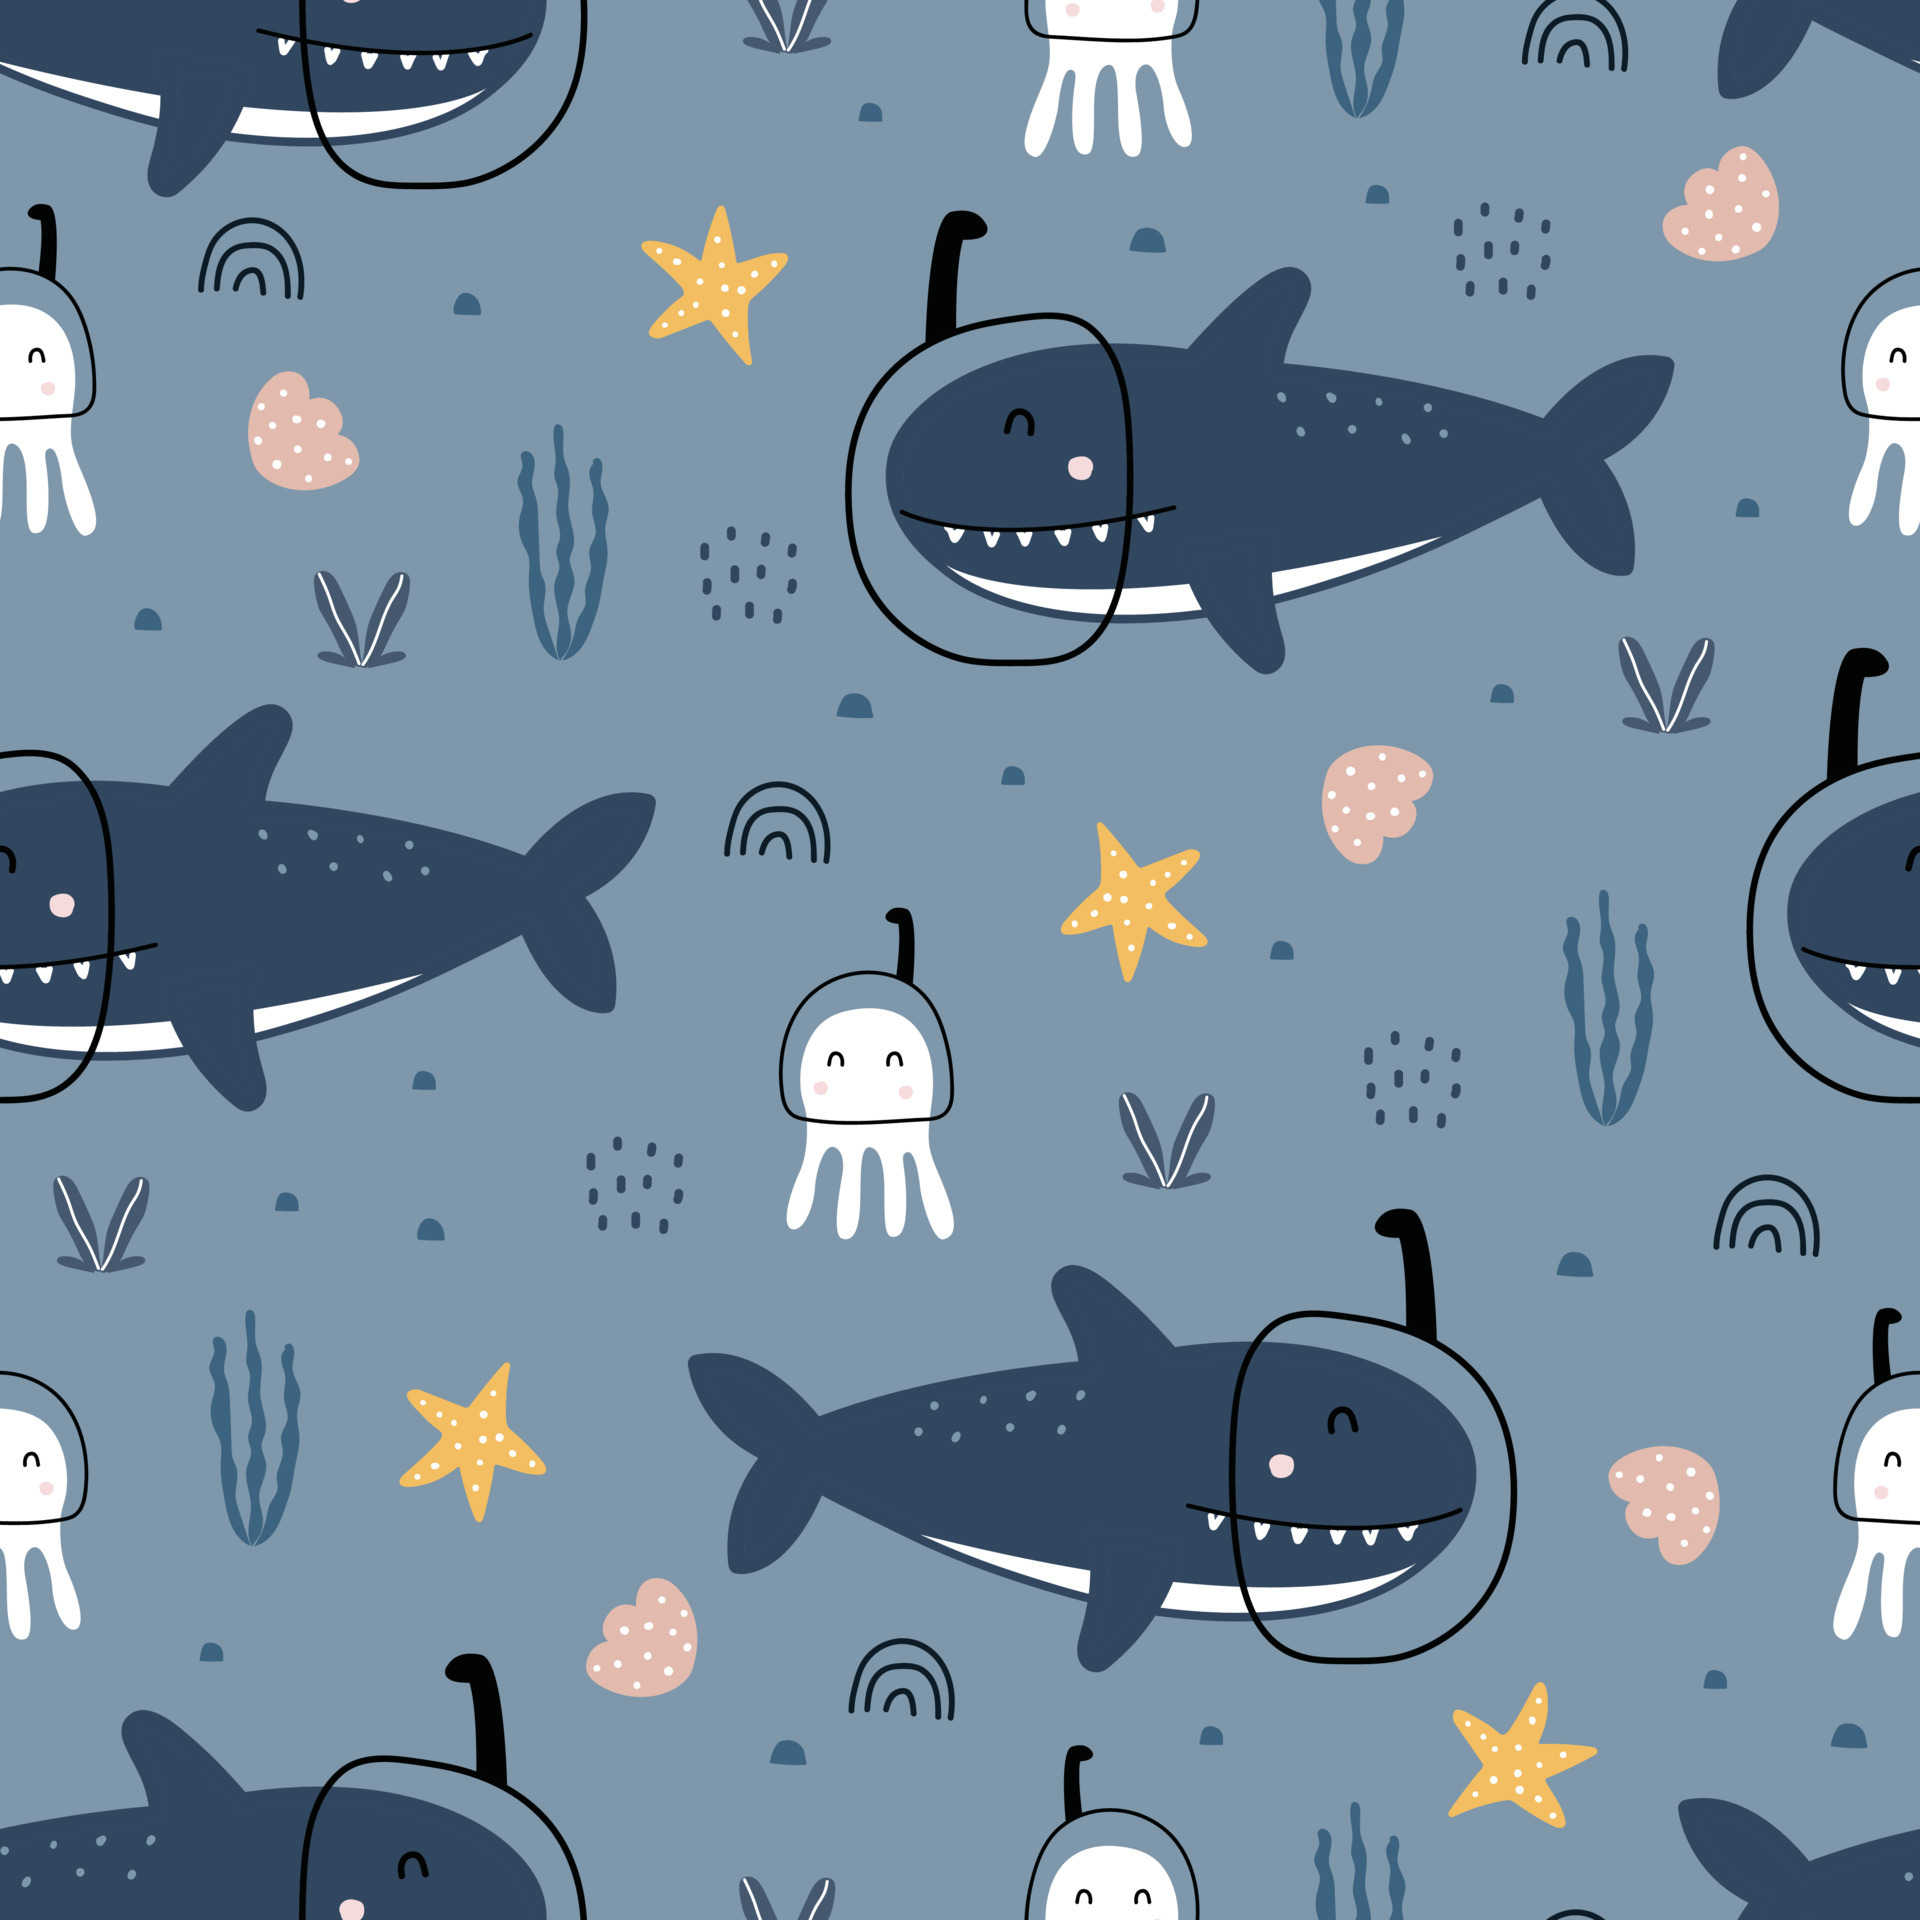 bebé de patrones sin fisuras fondo dibujos animados animales vida marina  con tiburones y pulpo diseño dibujado a mano en estilo de dibujos animados  utilizado para impresiones, fondos de pantalla, textiles, ilustraciones